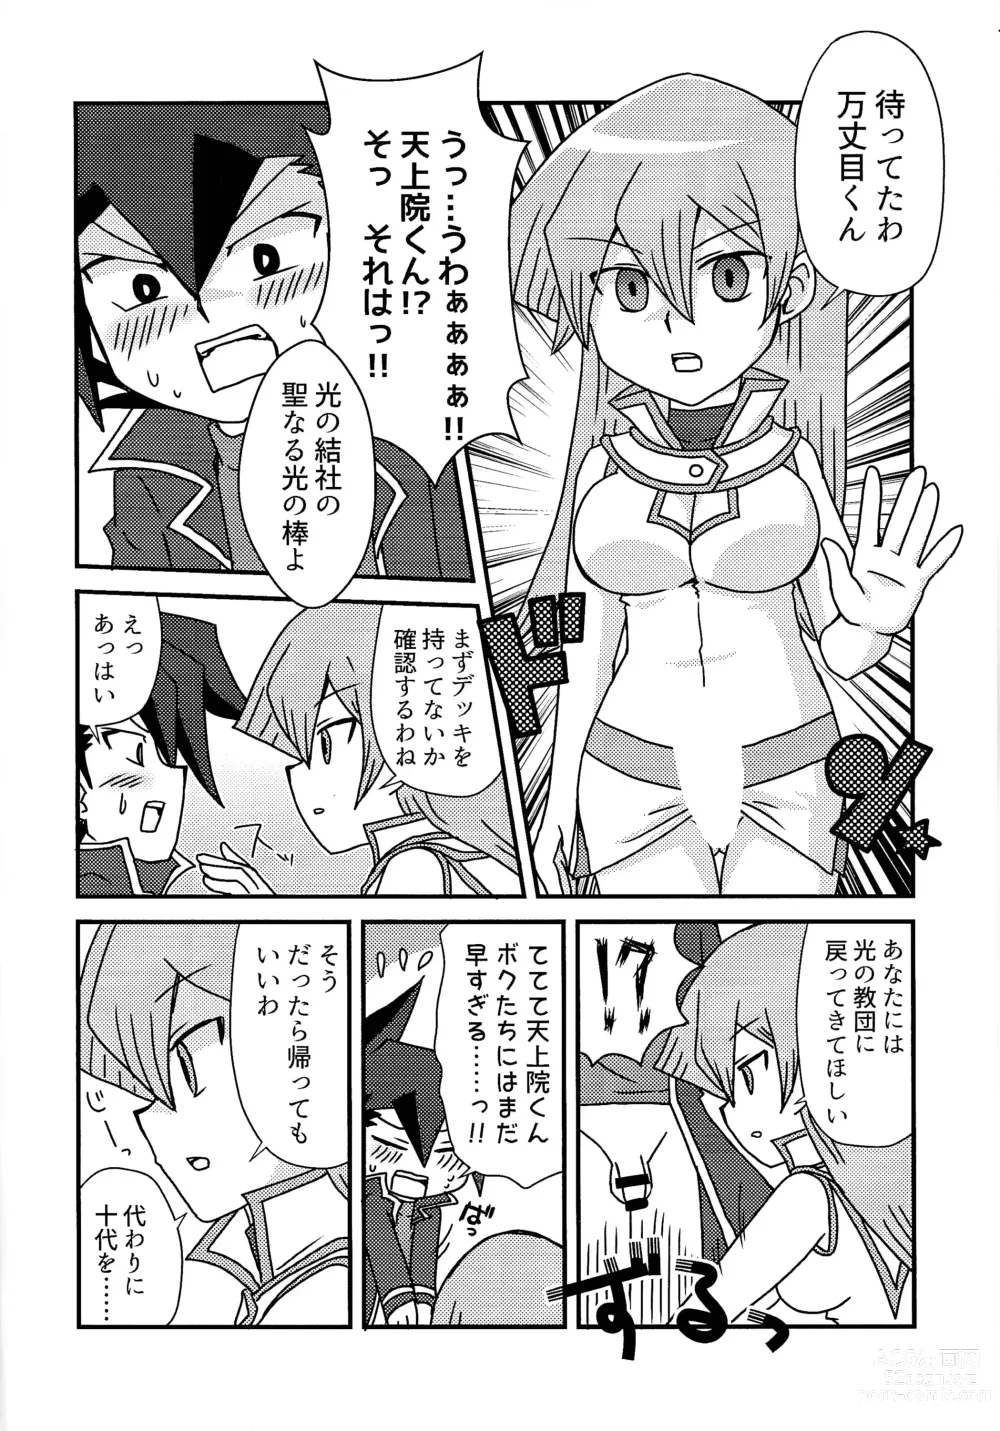 Page 5 of doujinshi Kuro no ore ga mata shiroku some rareyou to shite iru yodaga!?